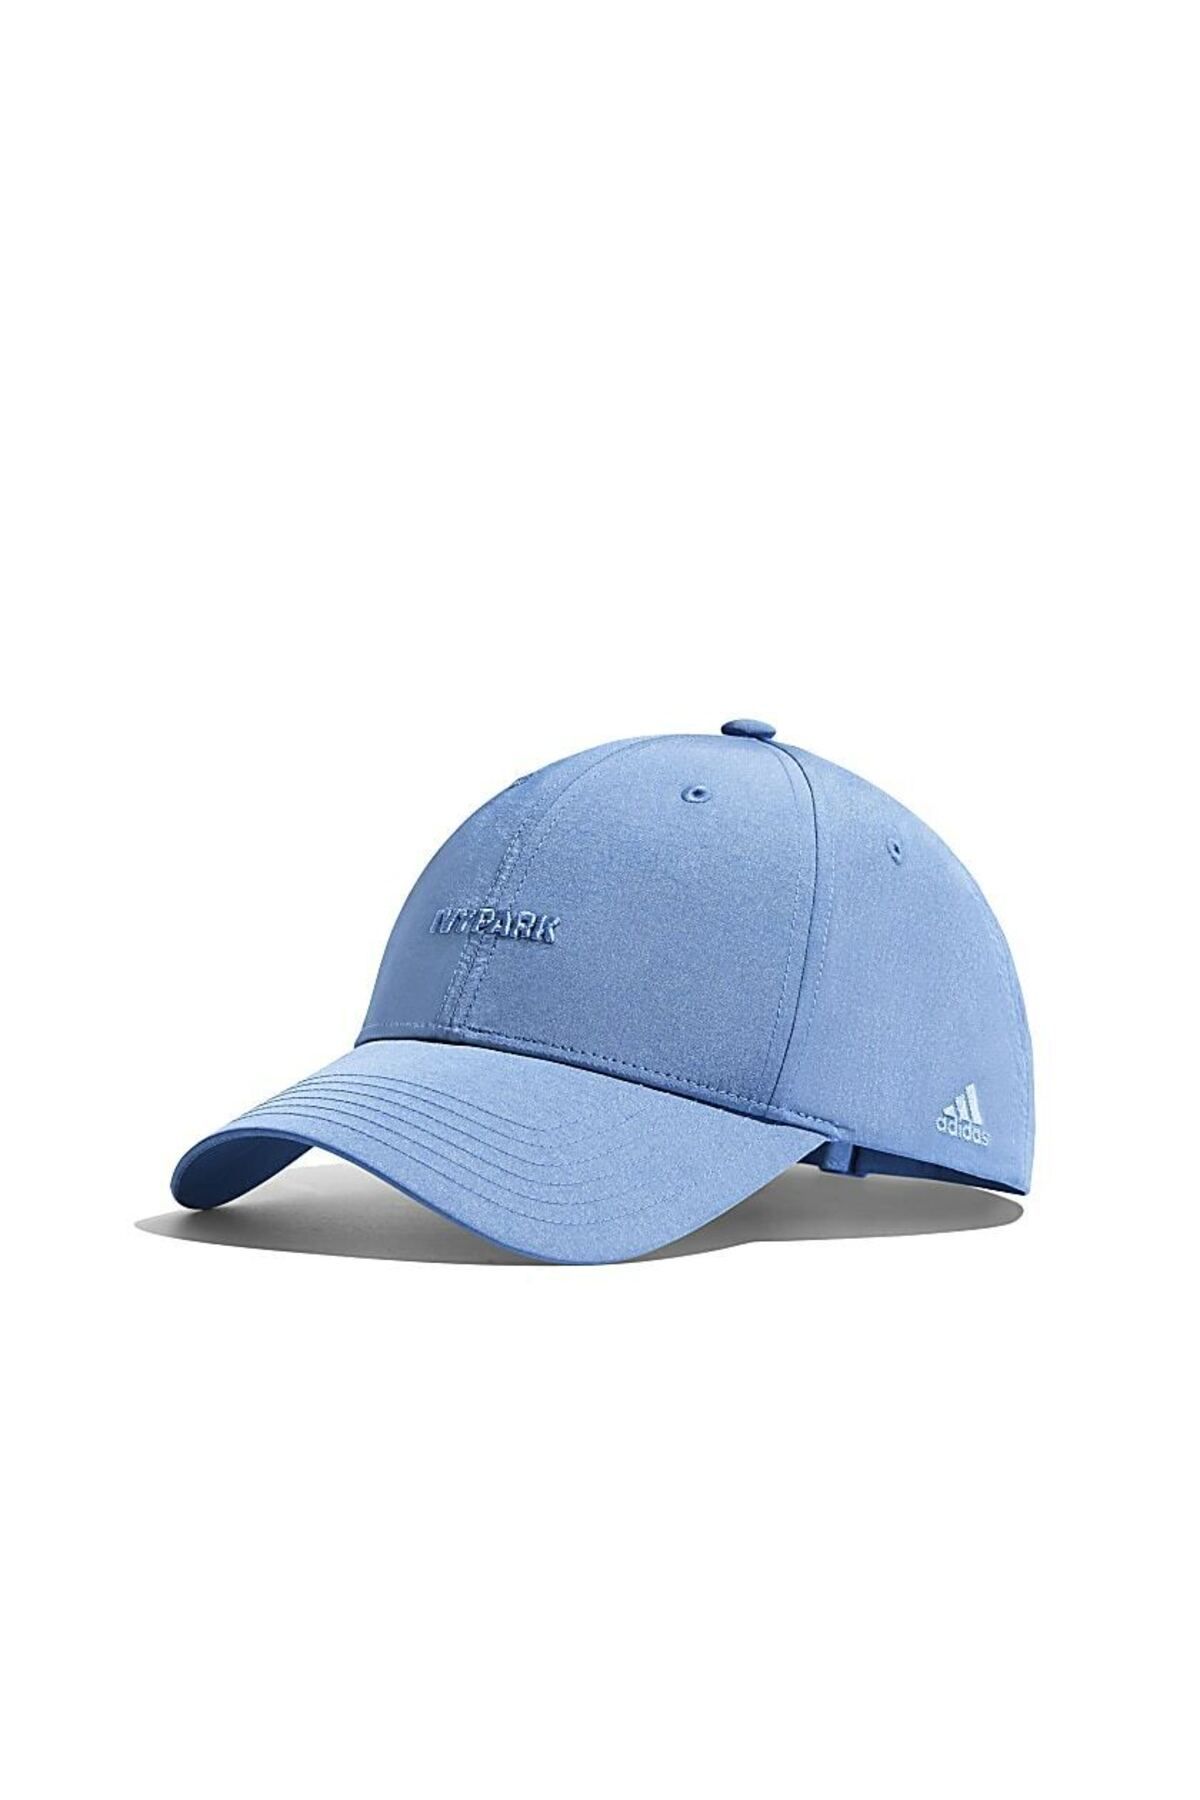 adidas X Beyonce İVY Park unisex mavi şapka